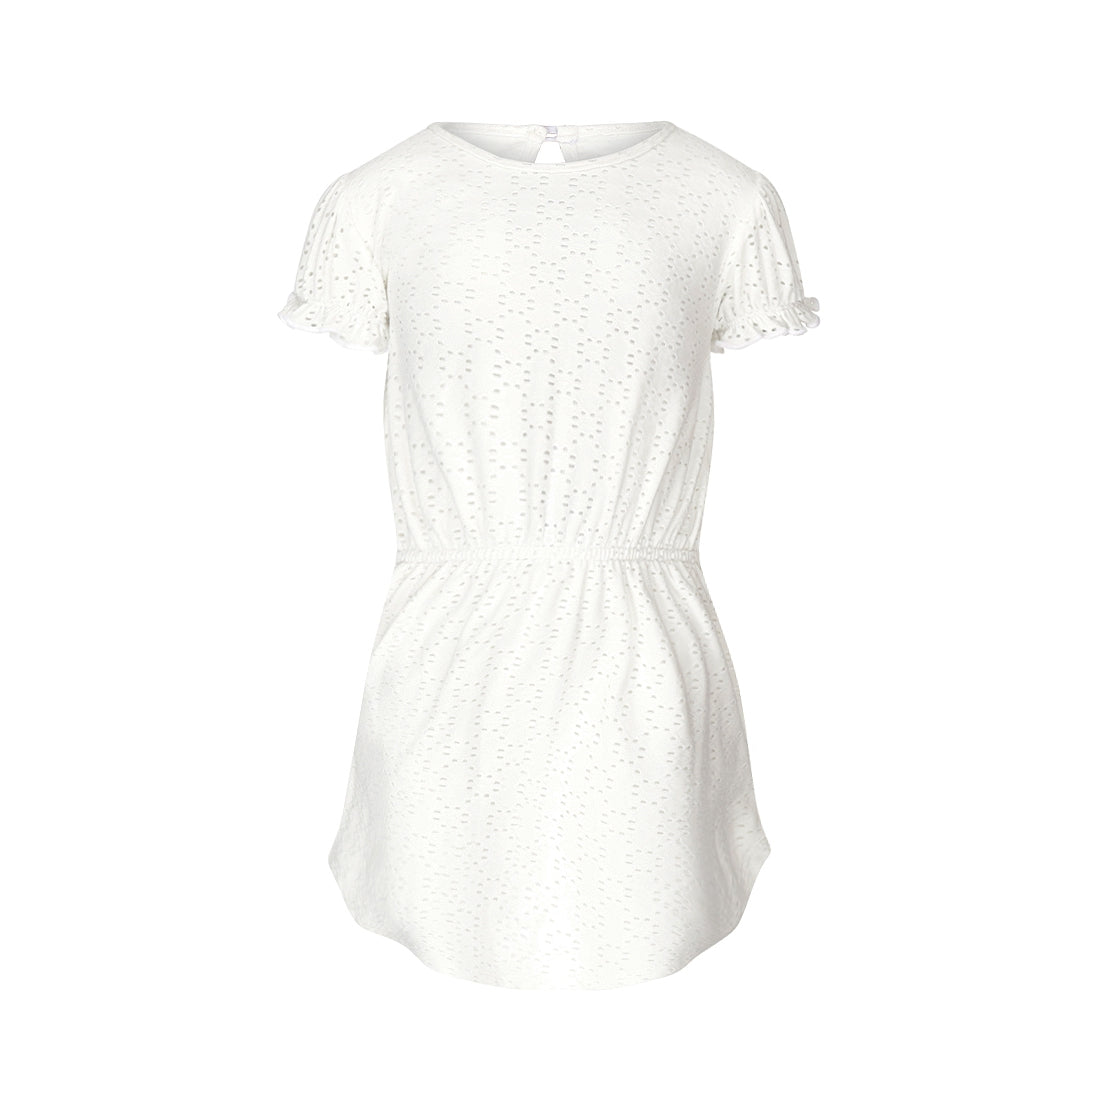 Meisjes Dress ss van Koko Noko in de kleur  Off white in maat 128.